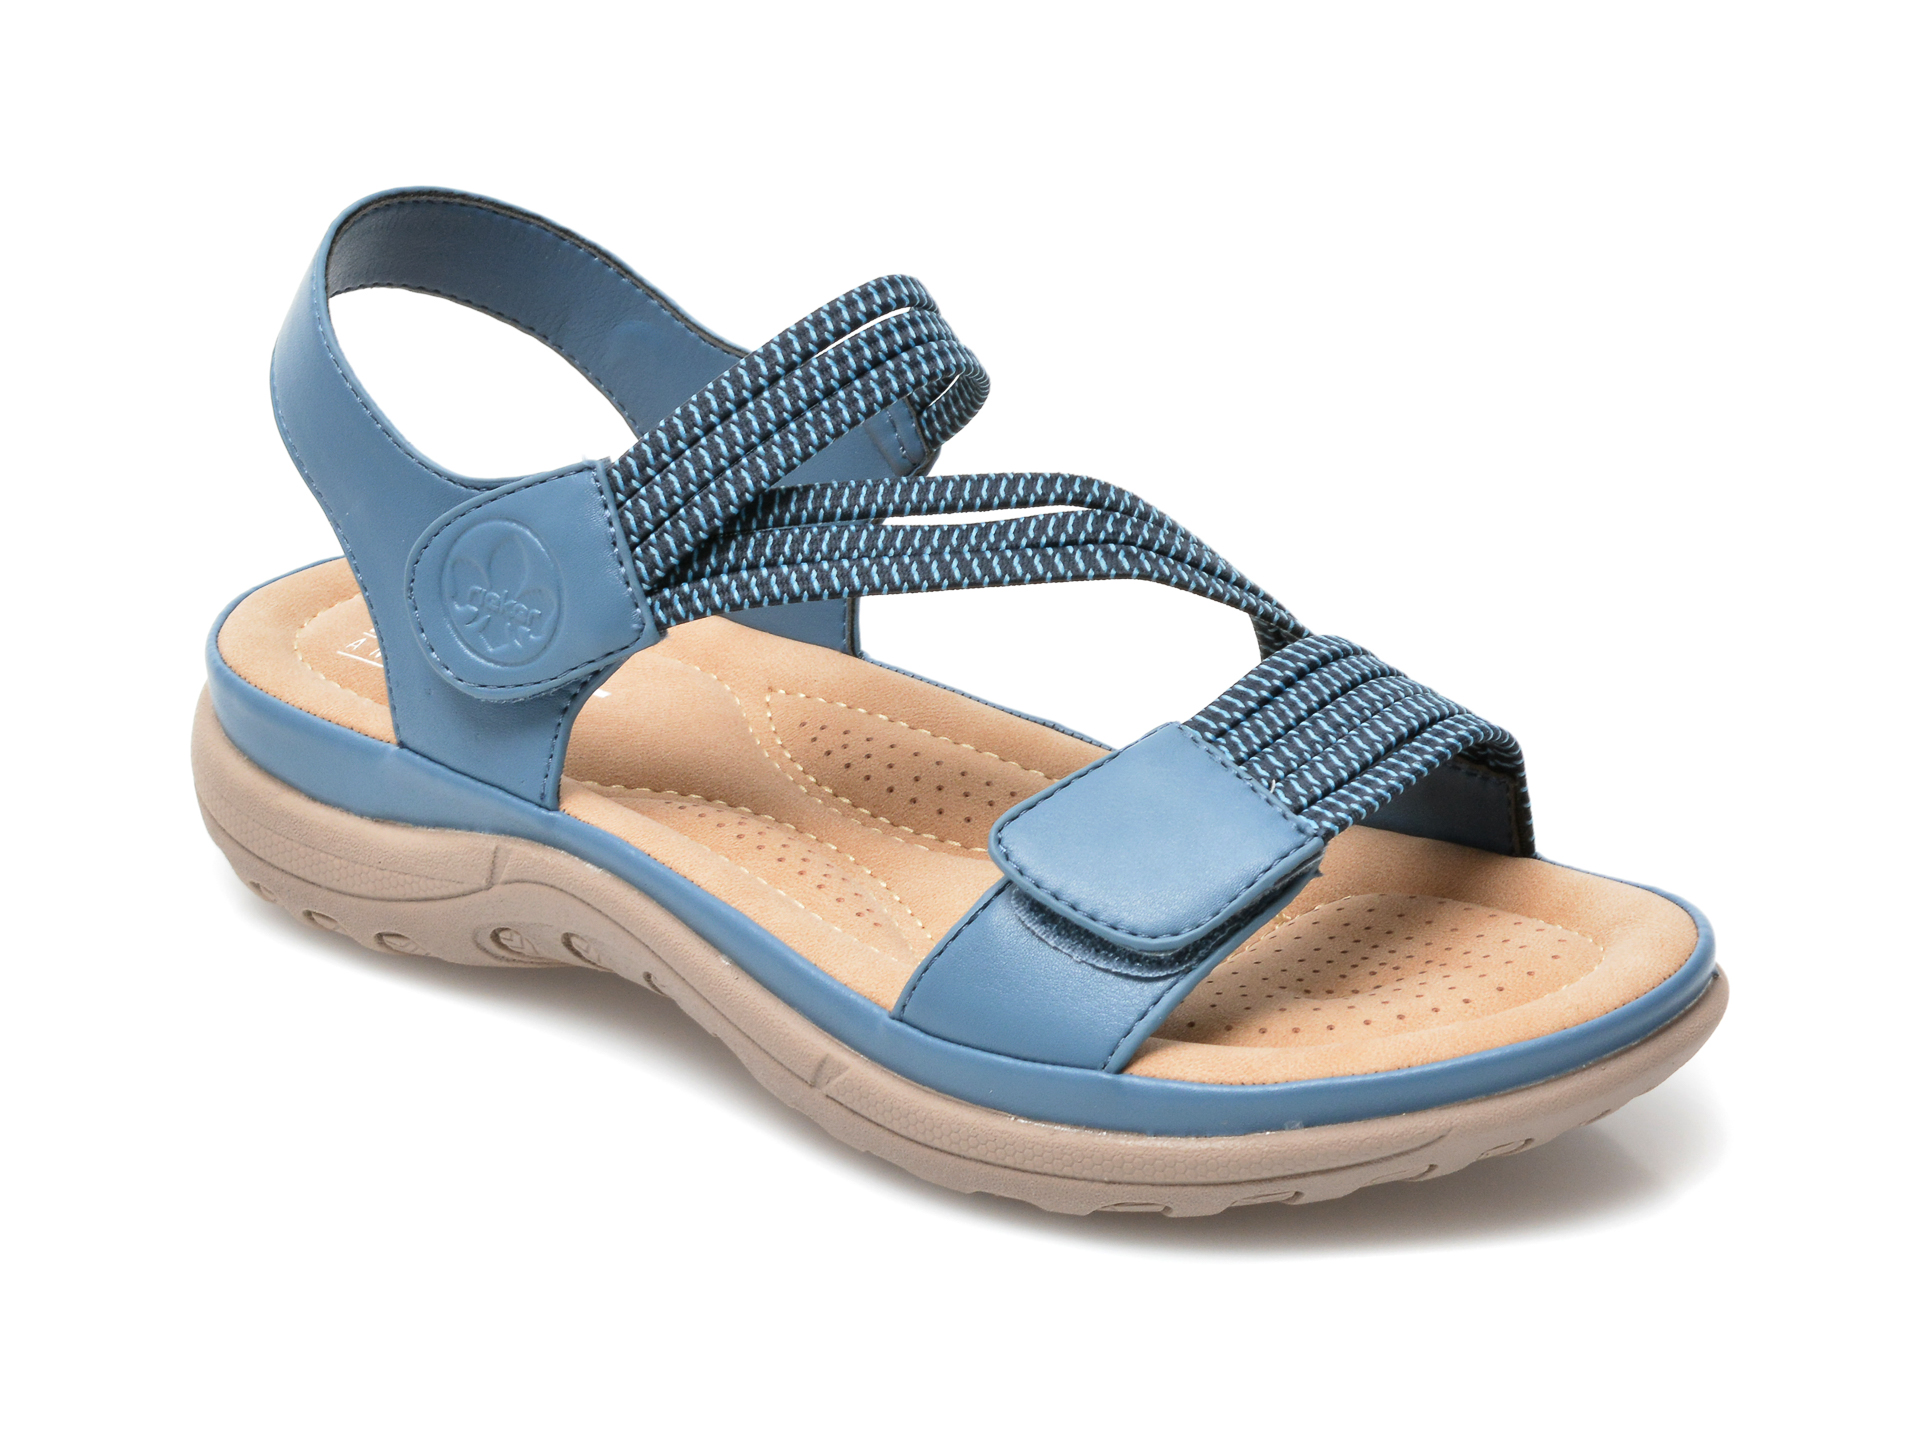 Sandale RIEKER albastre, V8873, din material textil si piele ecologica otter.ro otter.ro